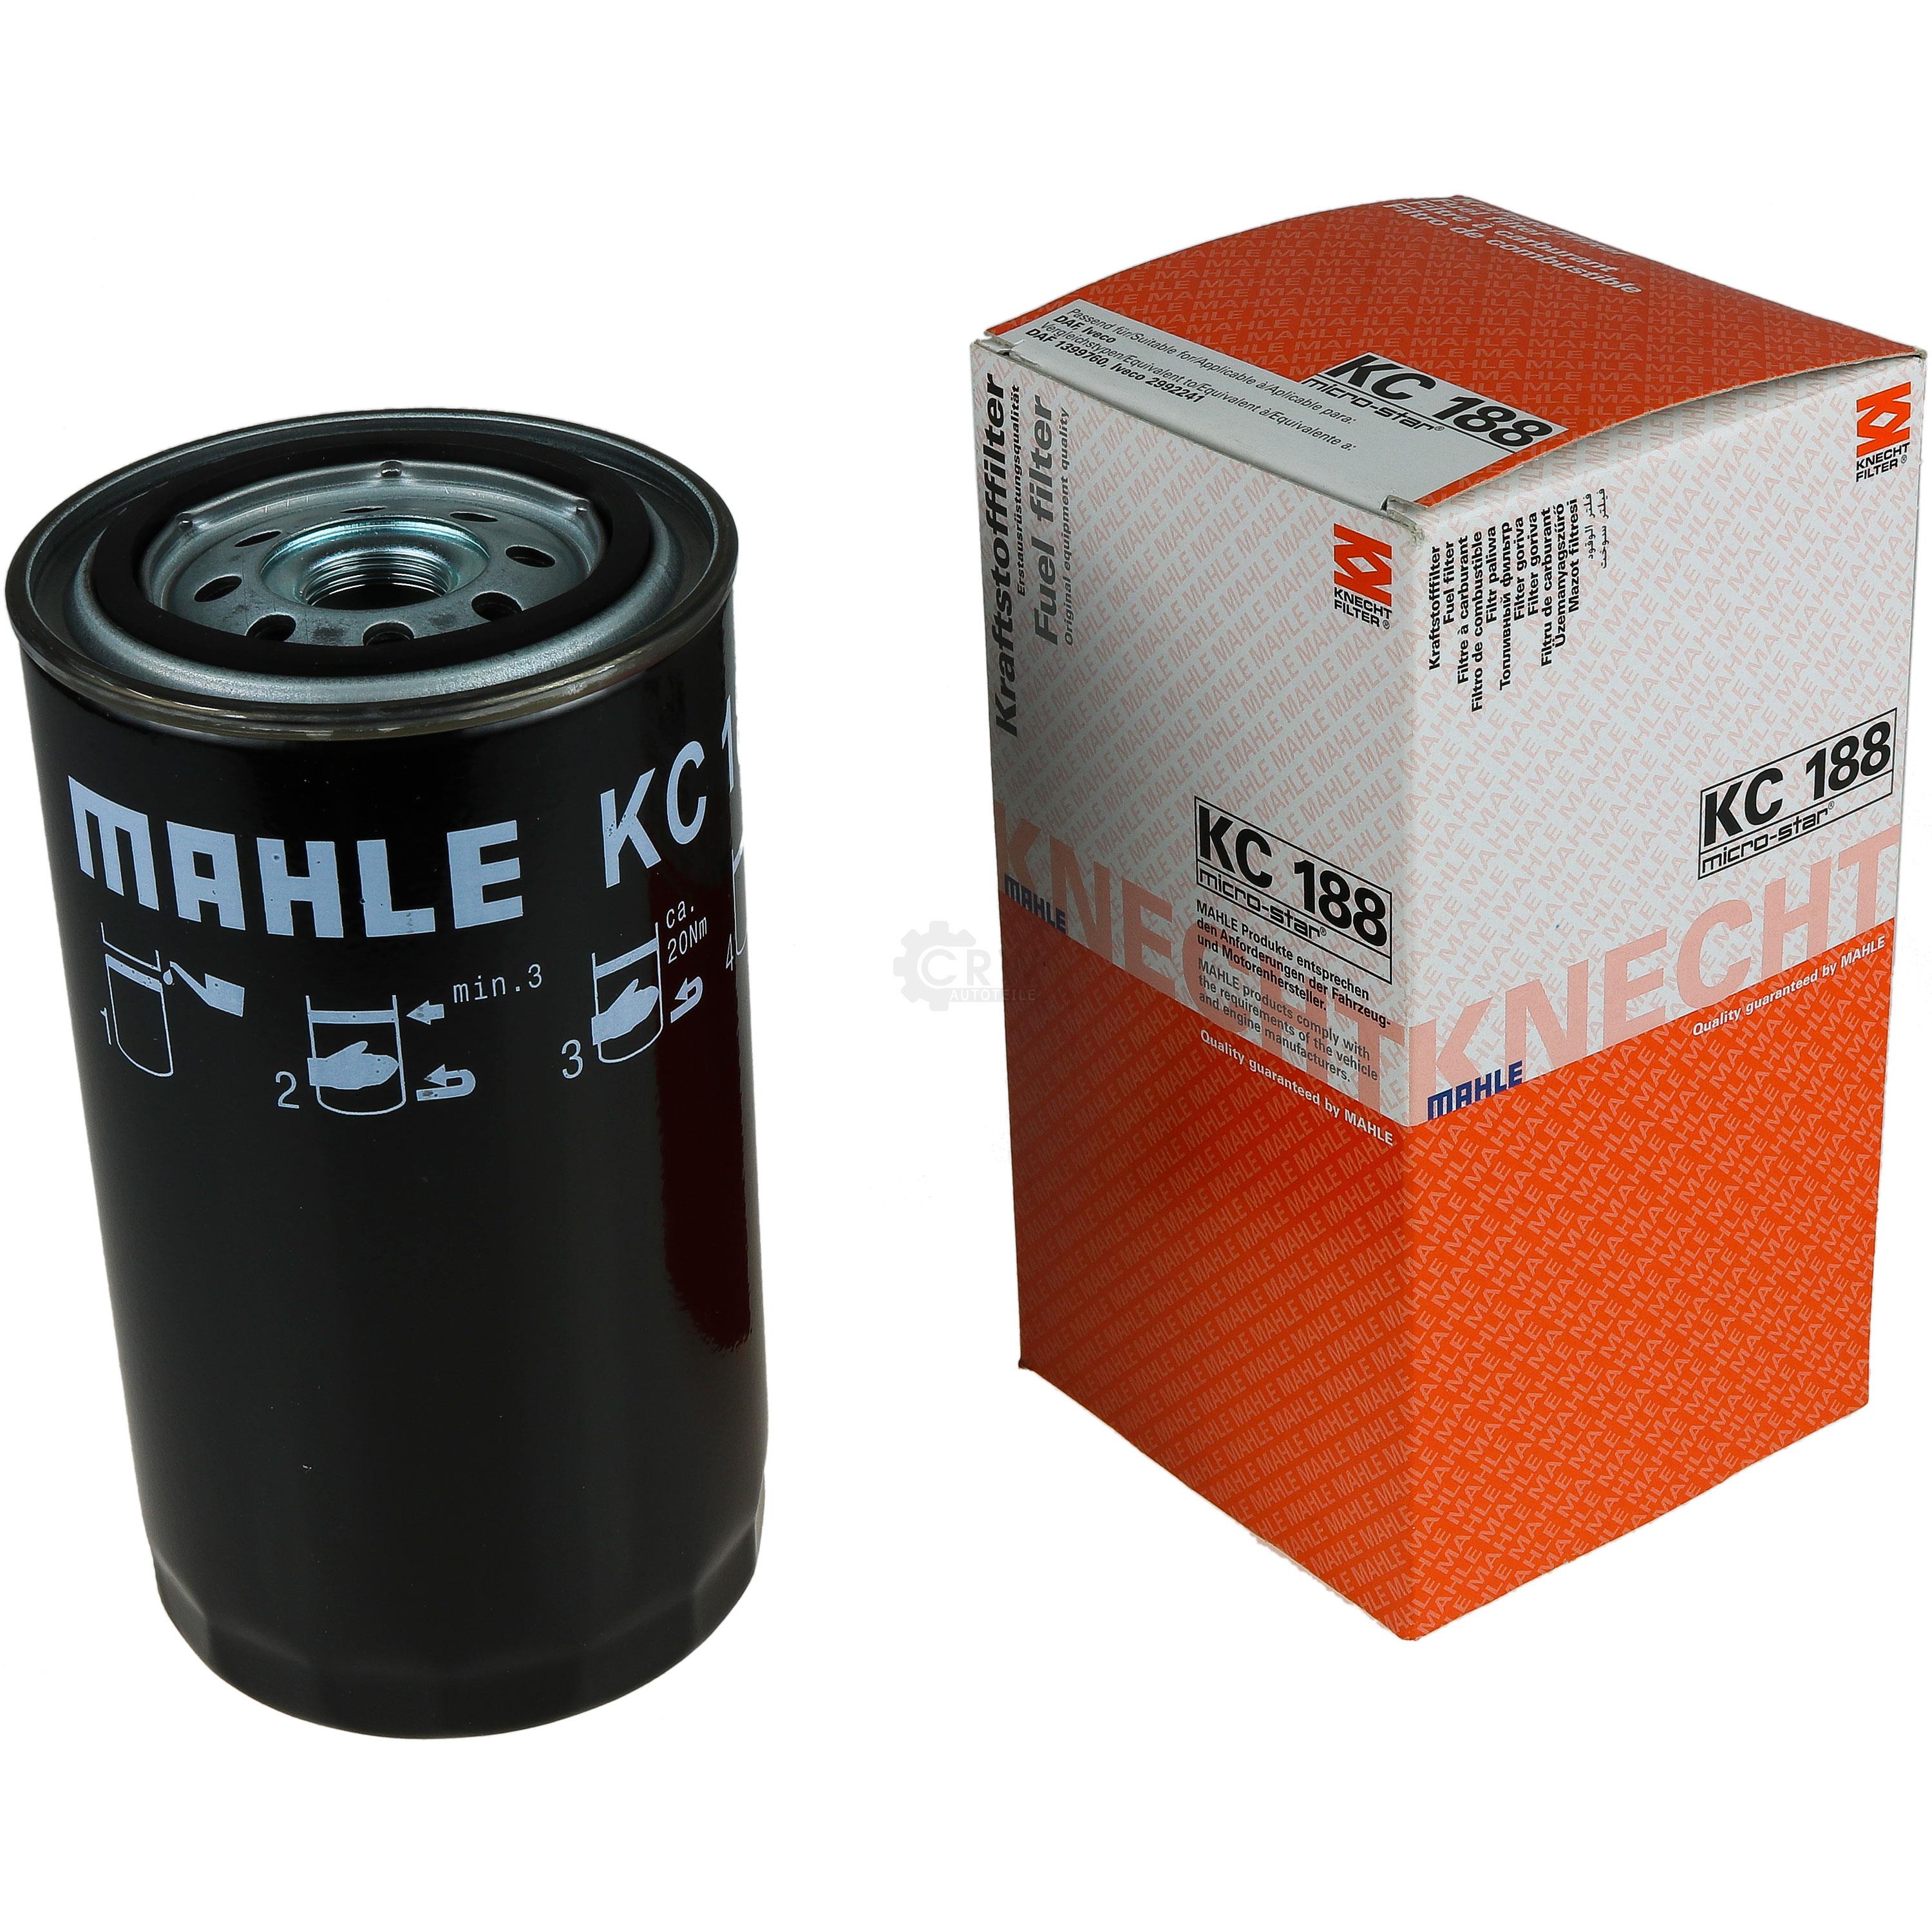 MAHLE / KNECHT Kraftstofffilter KC 188 Fuel Filter